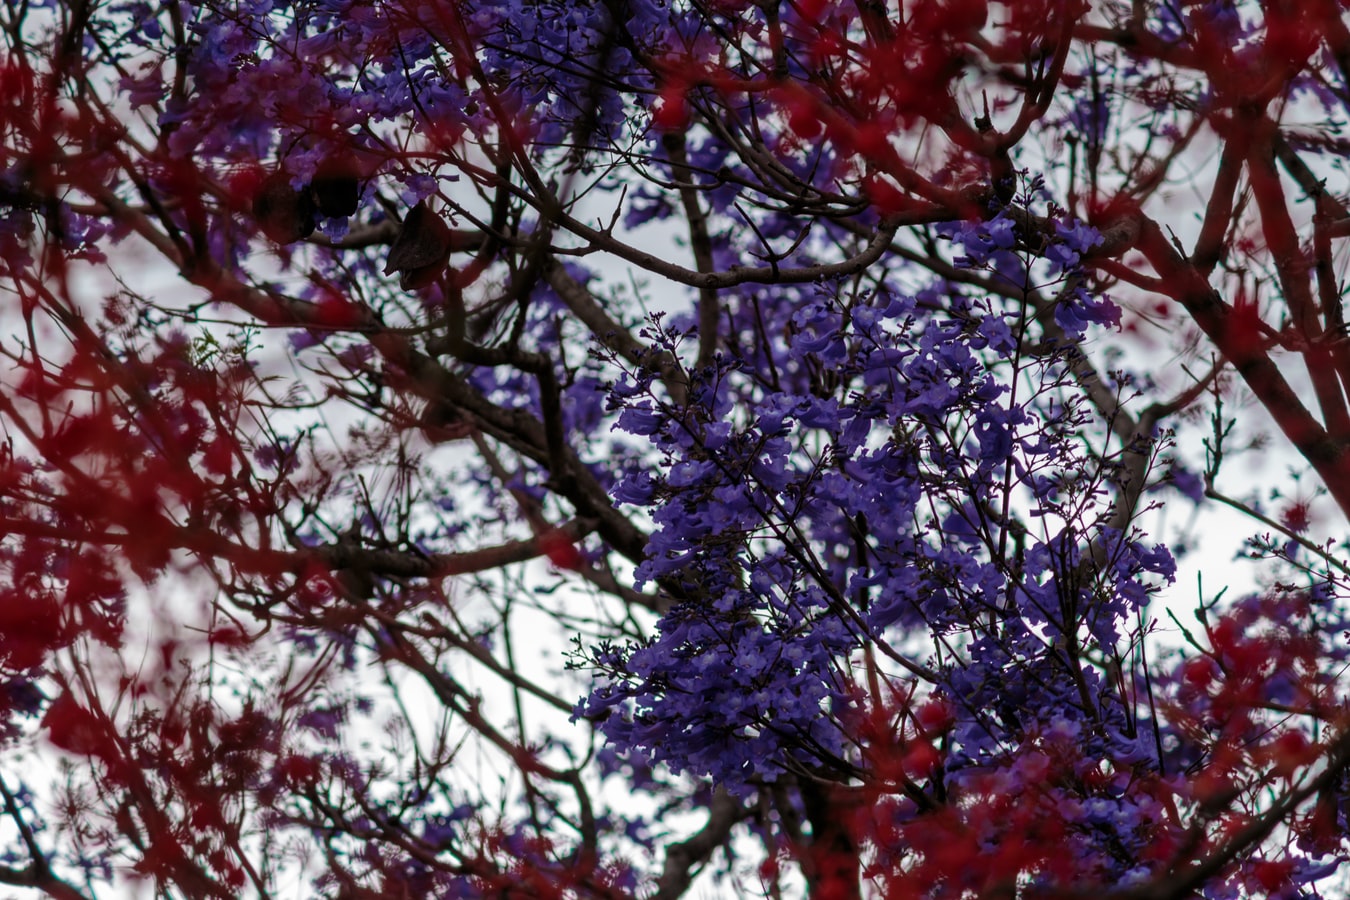 jacaranda tree with purple flowers